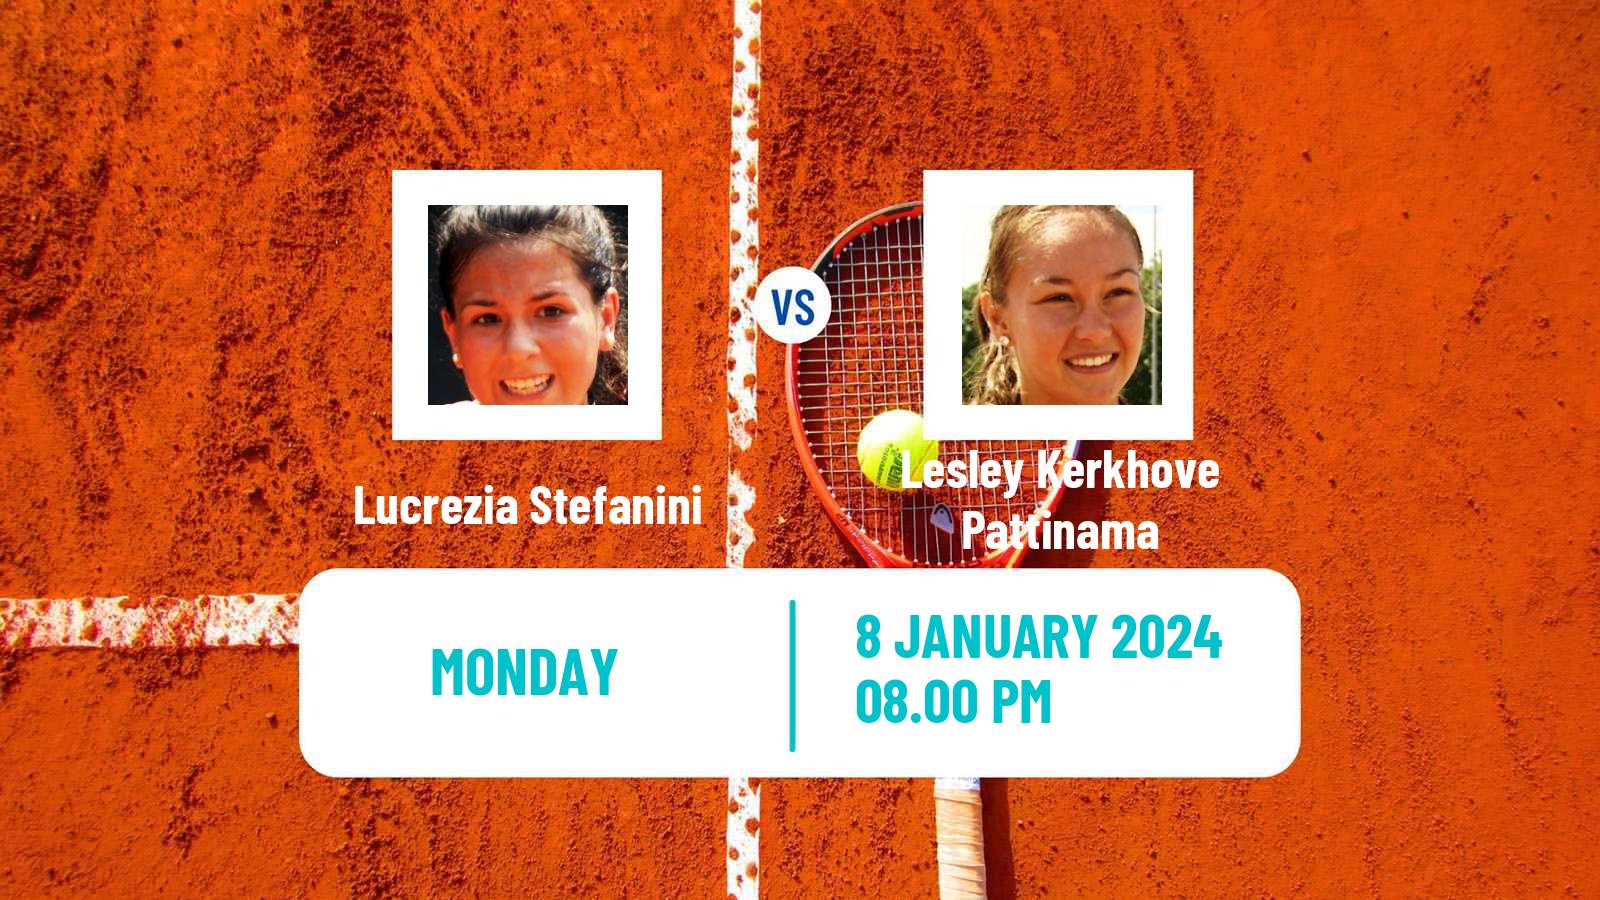 Tennis WTA Australian Open Lucrezia Stefanini - Lesley Kerkhove Pattinama